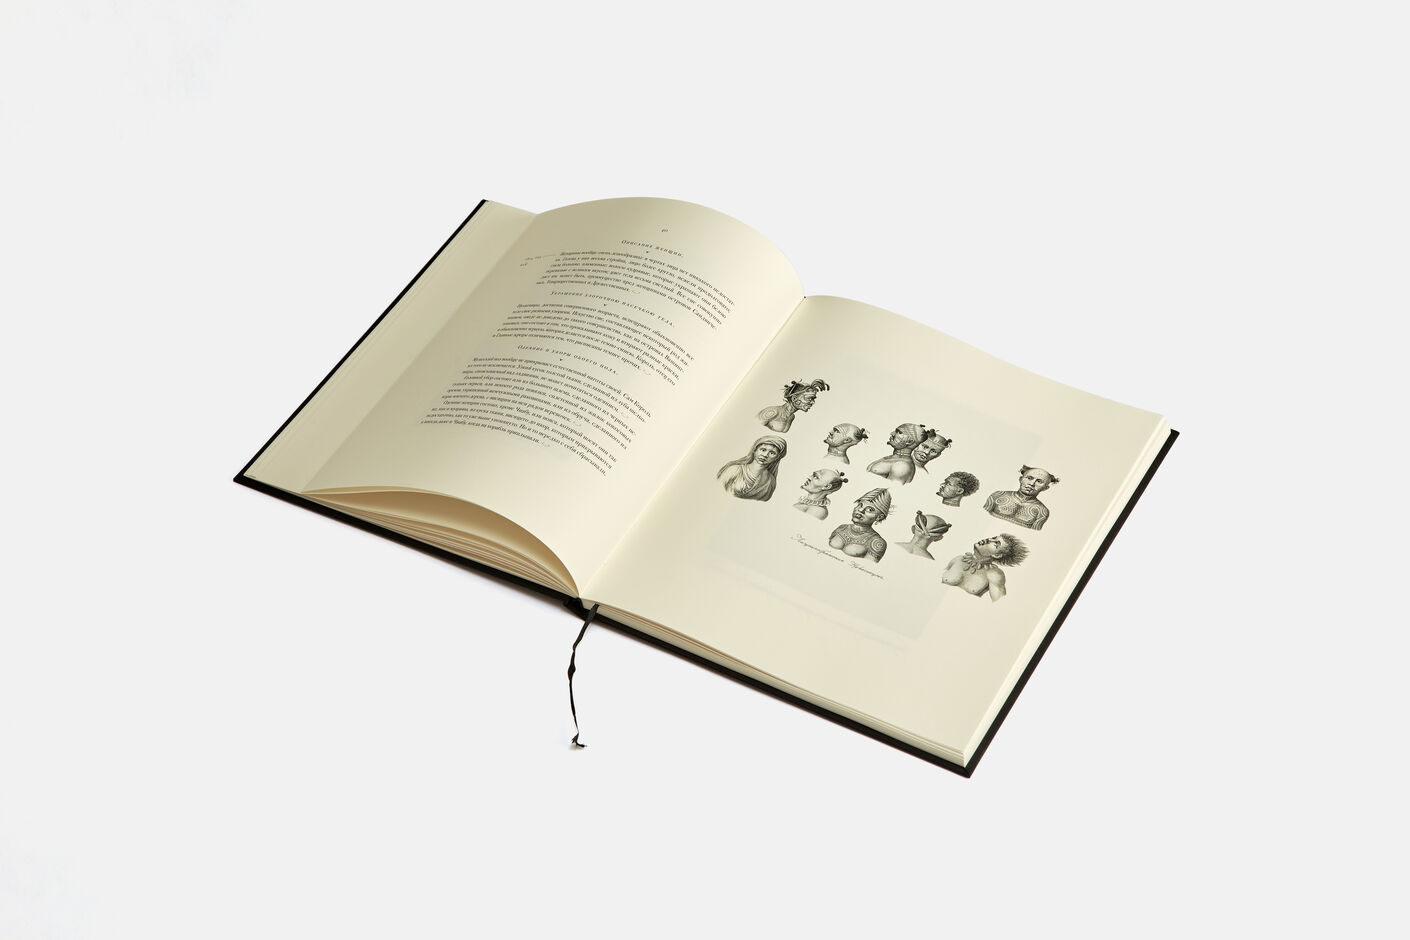 Подарочная книга Путешествие вокруг света в 1803-1806 годах, 2016, Агей Томеш, Лаборатория дизайна НИУ ВШЭ